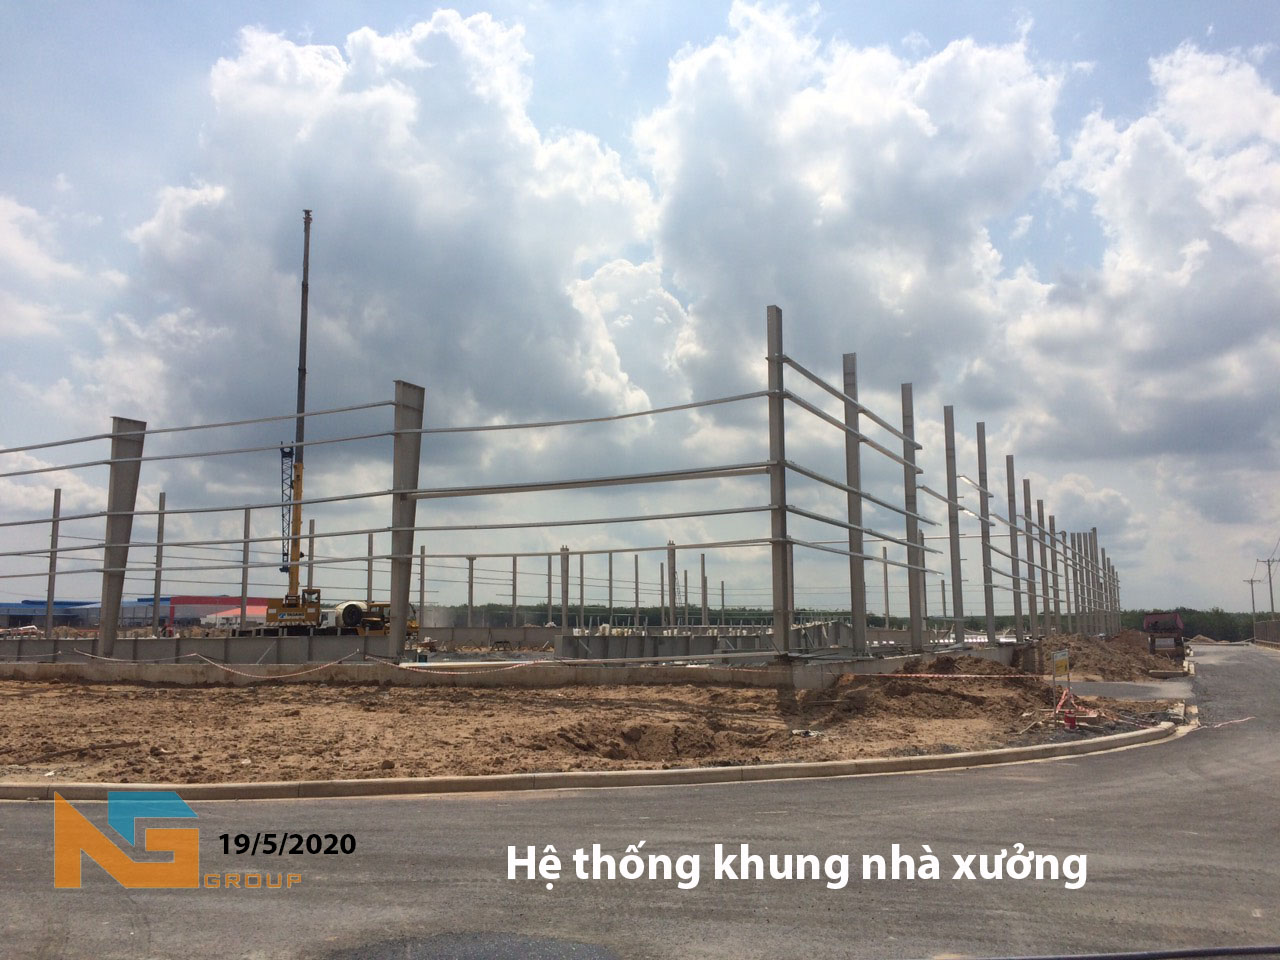 Nhà Xưởng cho thuê xây sẵn tại Đồng Nai trong giao đoạn đầu hoàn thiện hệ thống khung